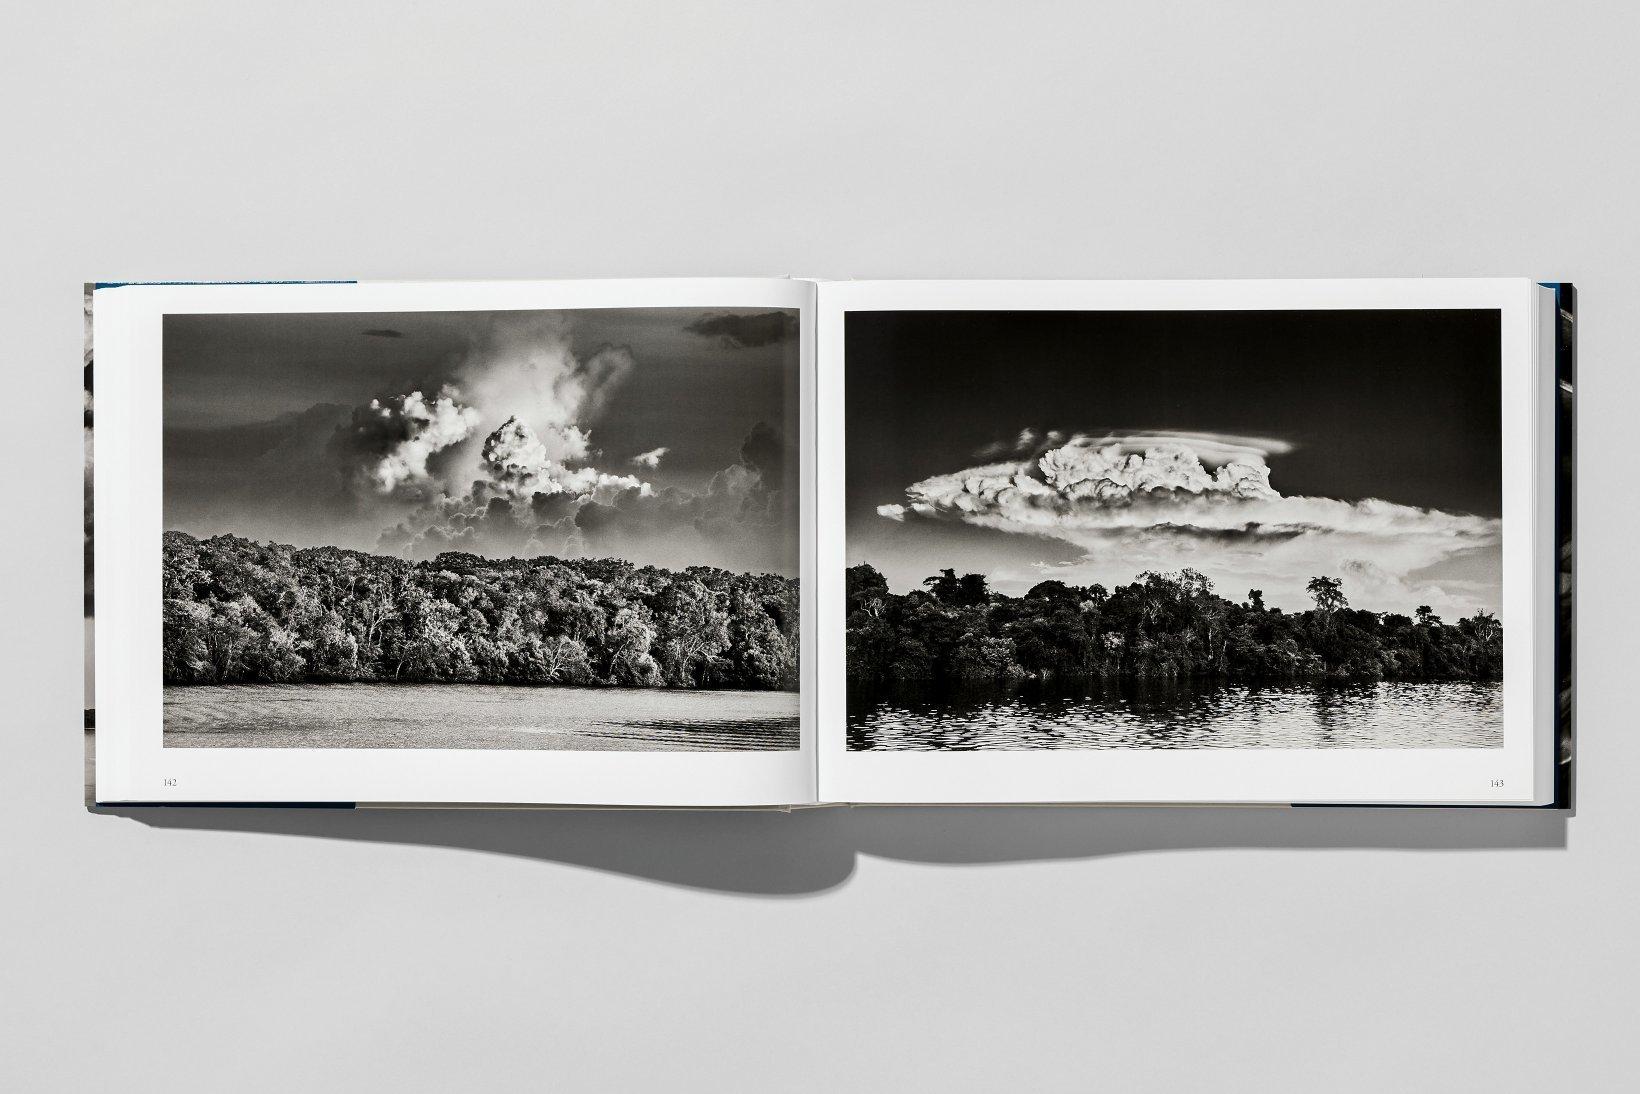 Contemporary Sebastião Salgado, Amazônia, Photography Book For Sale